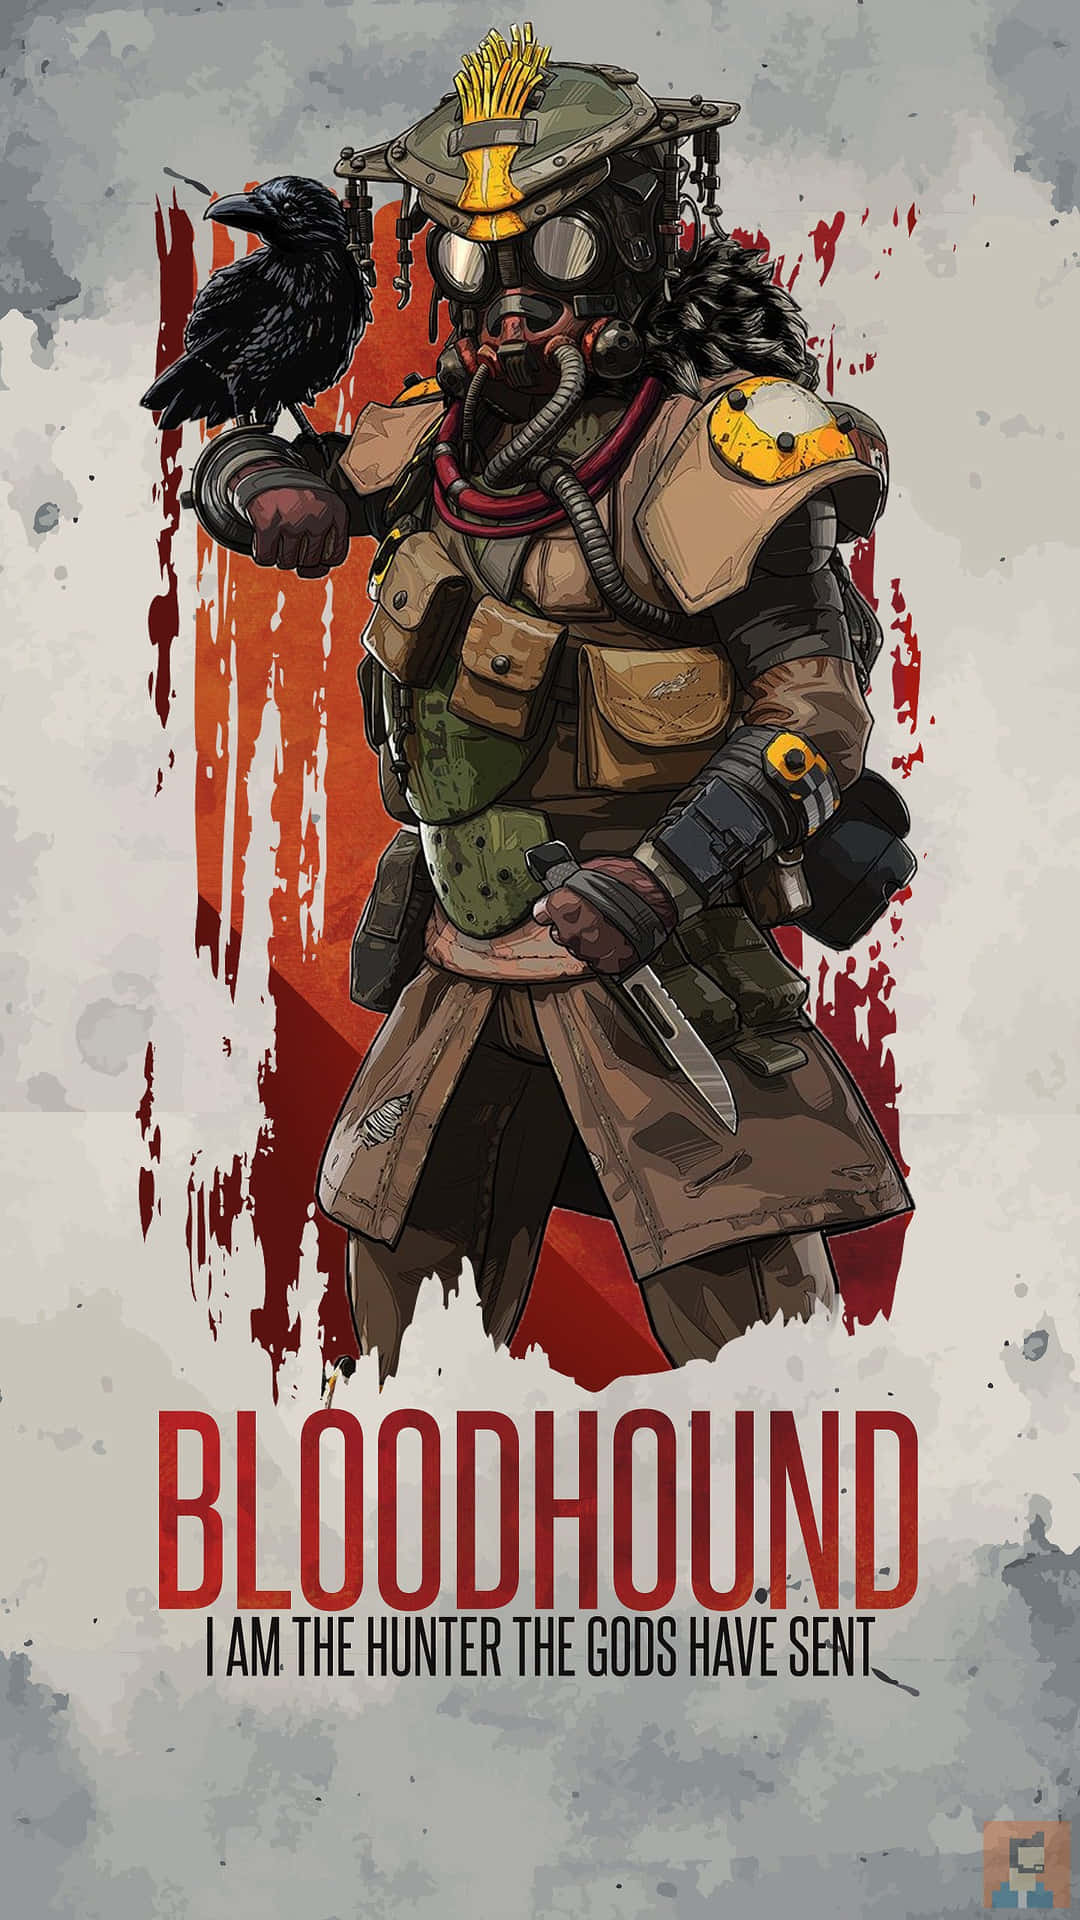 Pixel 3 Apex Legends Bloodhound Poster Background